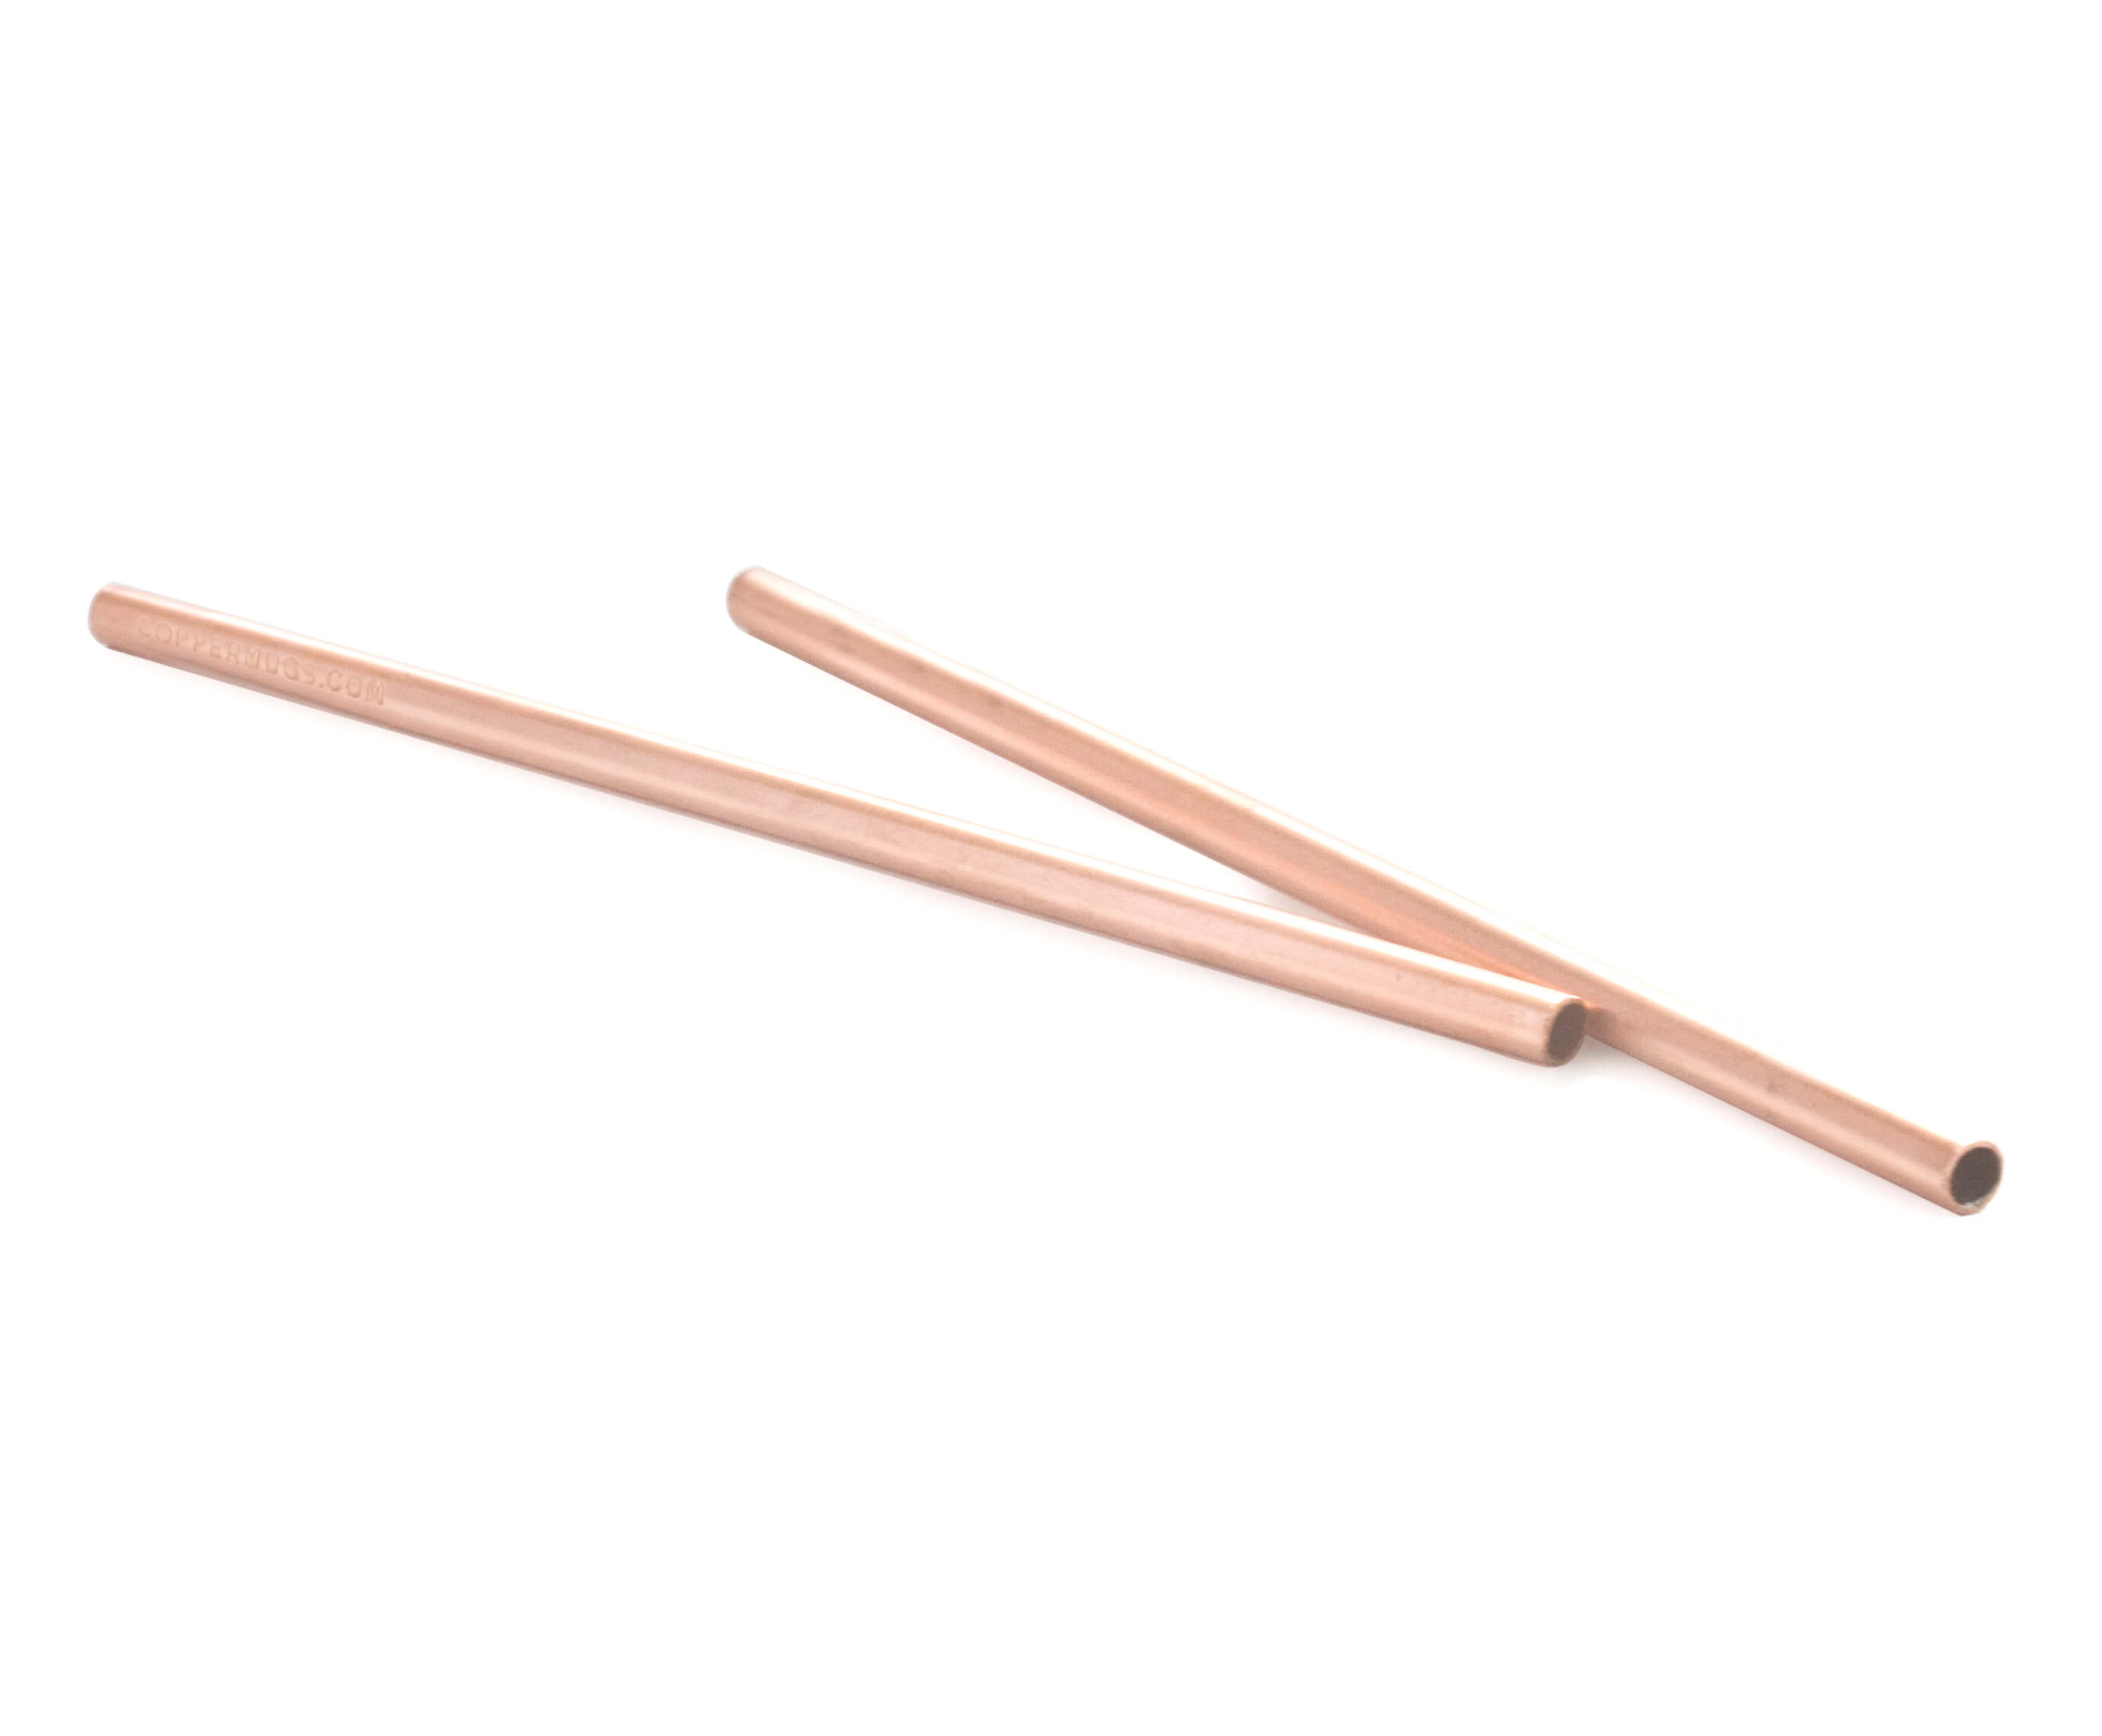 copper drinking straws mini 5,5’ size set of 6 solid 100% Copper straws 